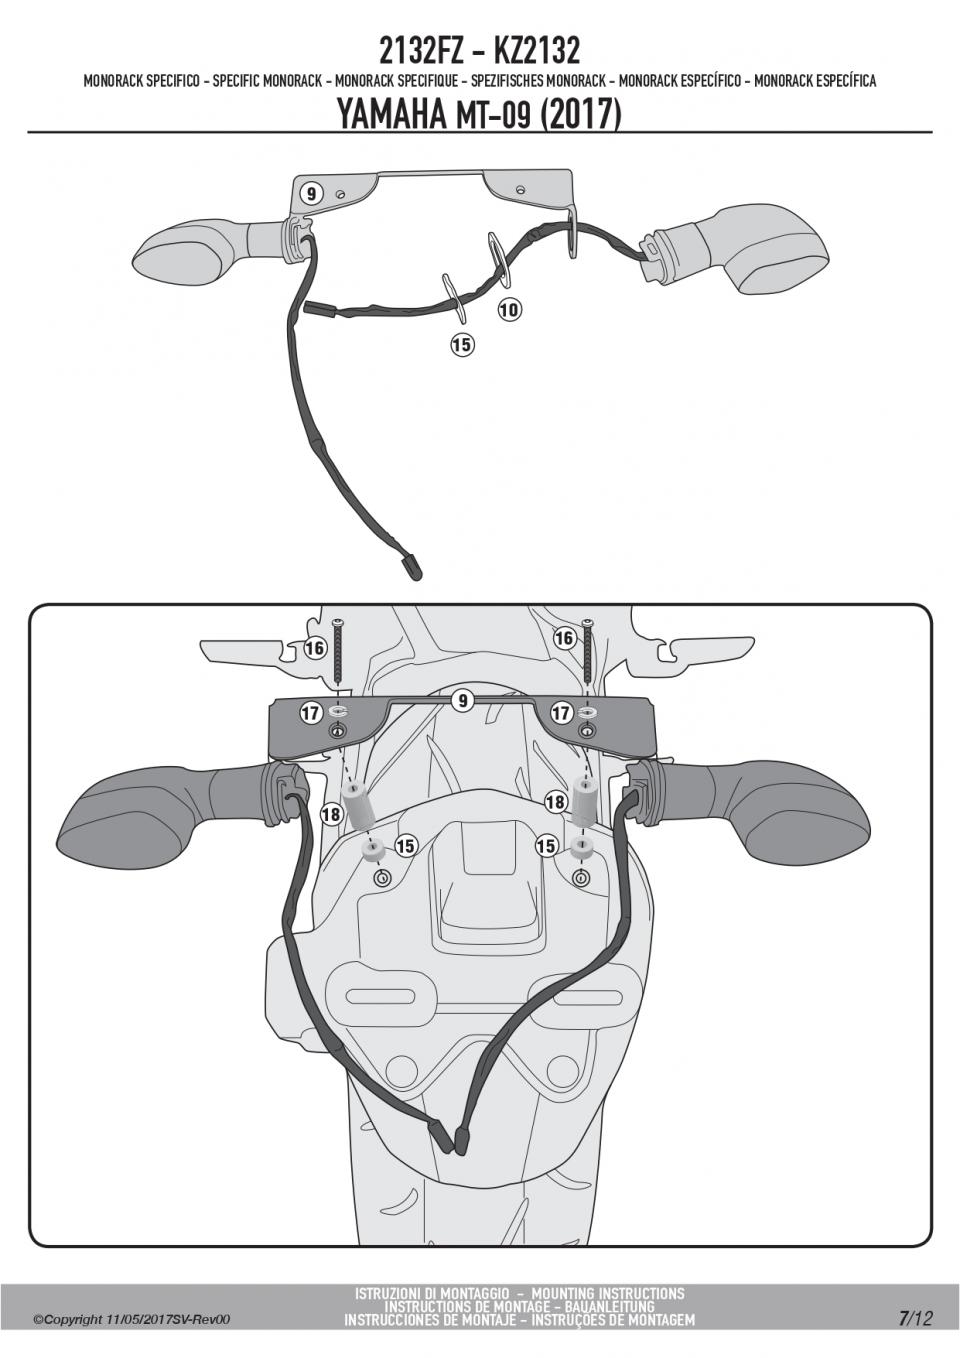 Support de top case GIVI pour moto Yamaha 900 MT-09 2132FZ MONOKEY MONOLOCK